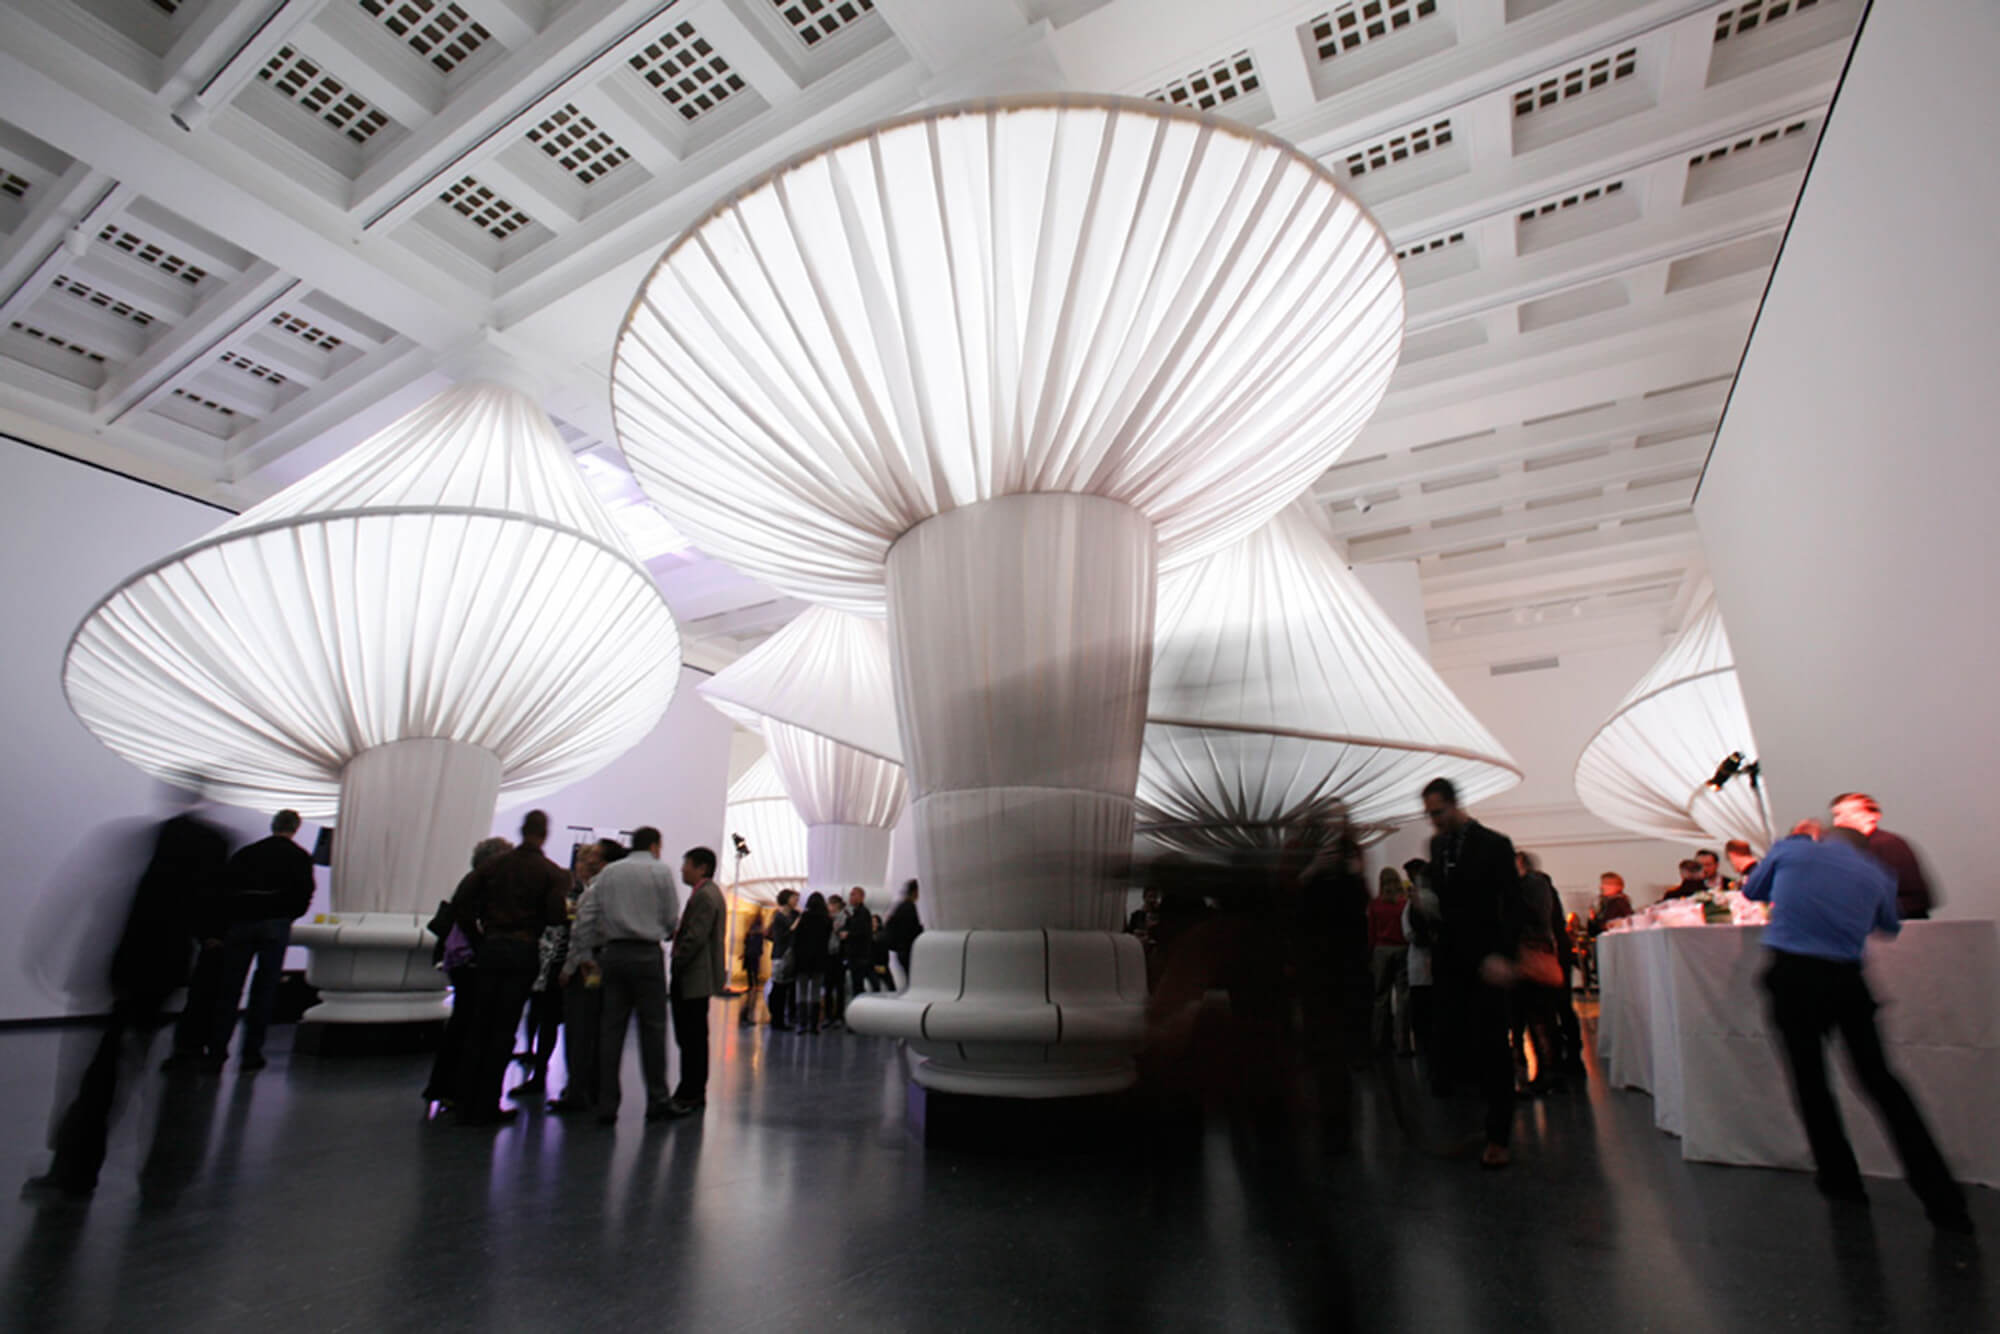 Brooklyn Müzesinde teşhirdeki Sunbrella kumaşlarını sergileyen Situ Studio tarafından düzenlenen Sanat Sergisi